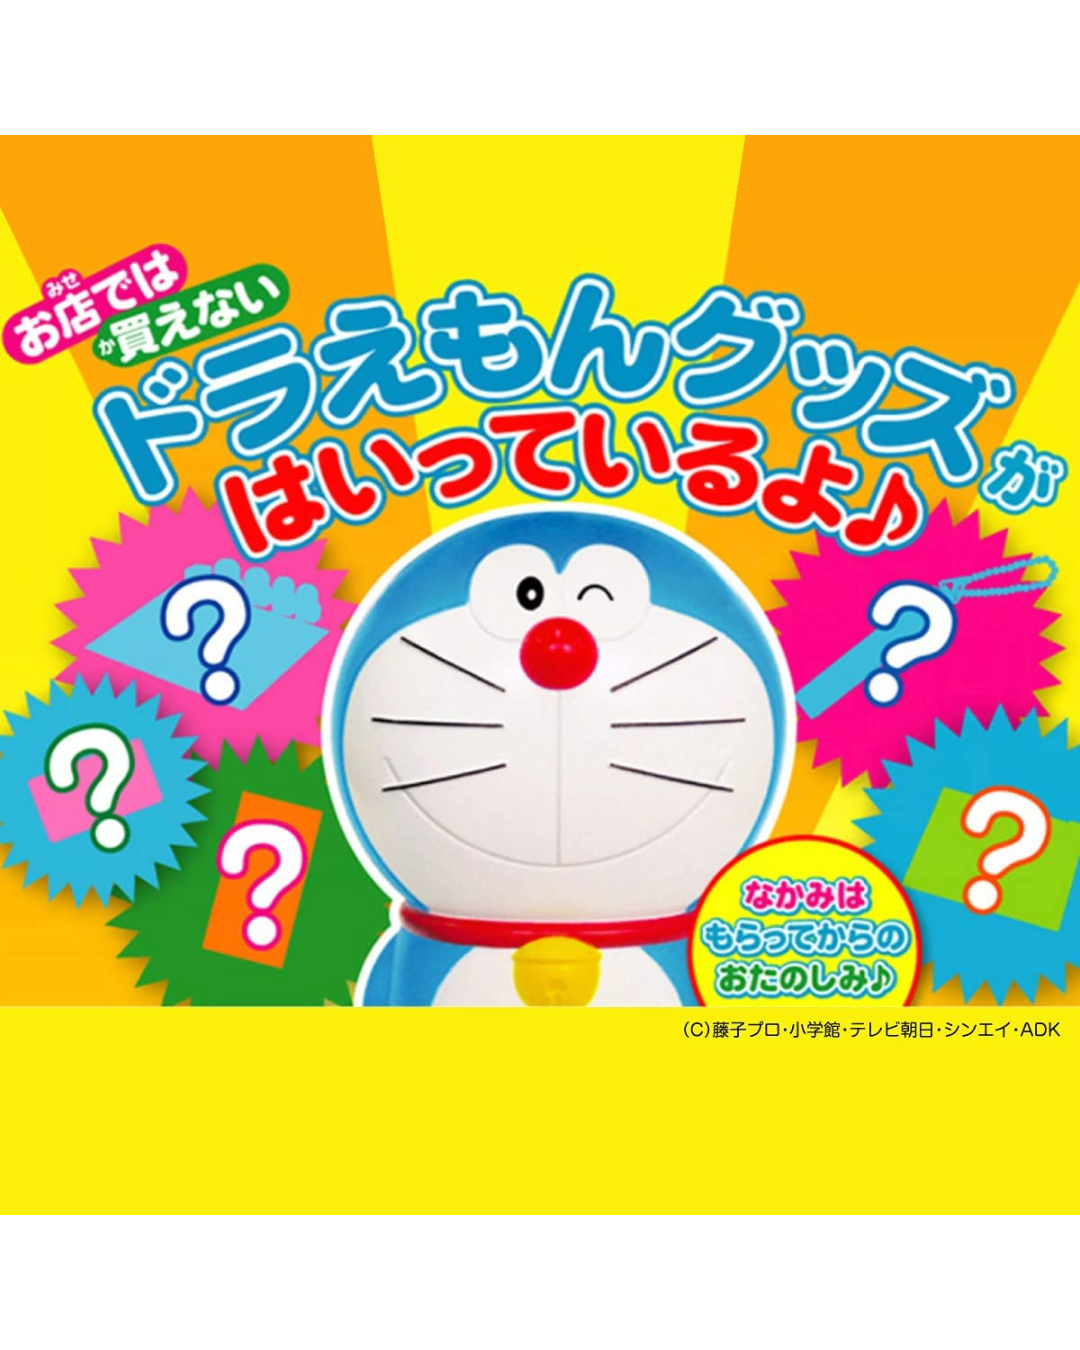 Lotte Doraemon Ramune Gum